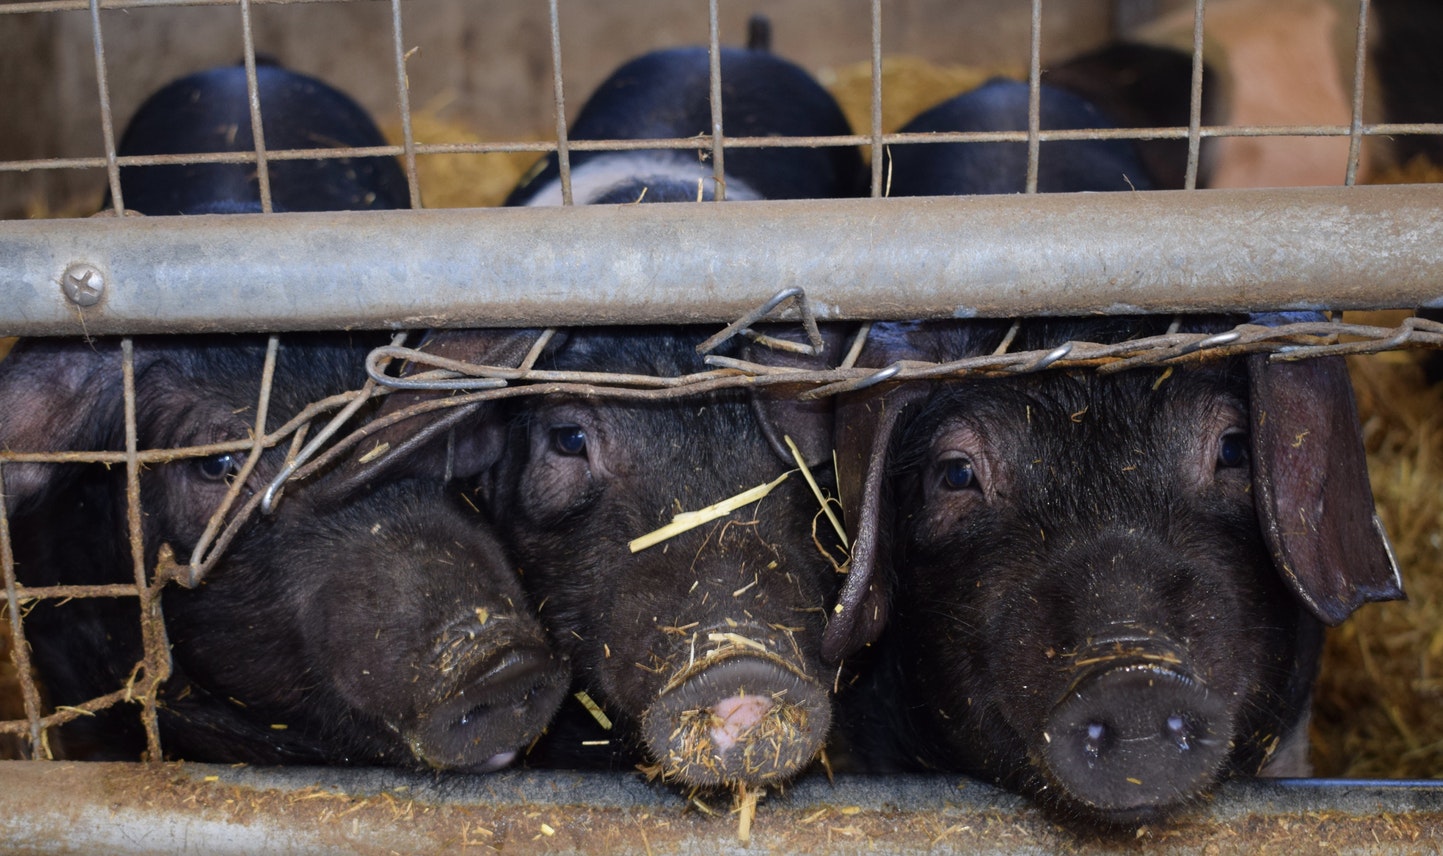 Γερμανία: Στη φυλακή κτηνοτρόφος που βασάνιζε ζώα με βαριοπούλα